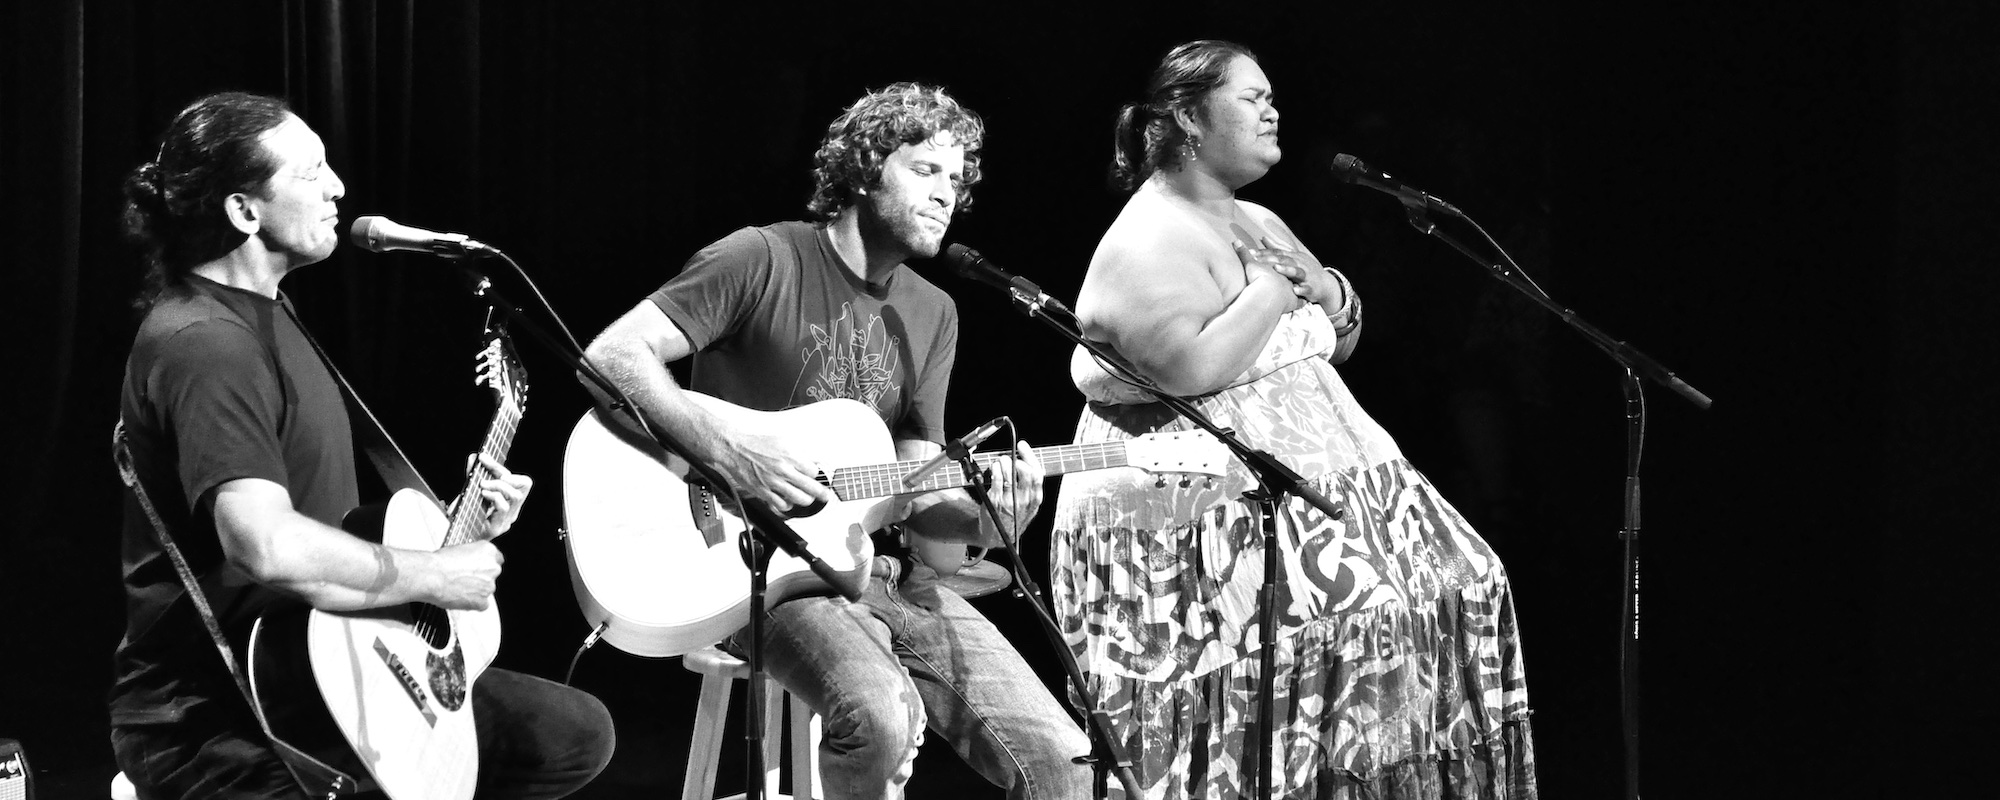 Jack Johnson Announces ‘Songs for Maui’ Benefit Album